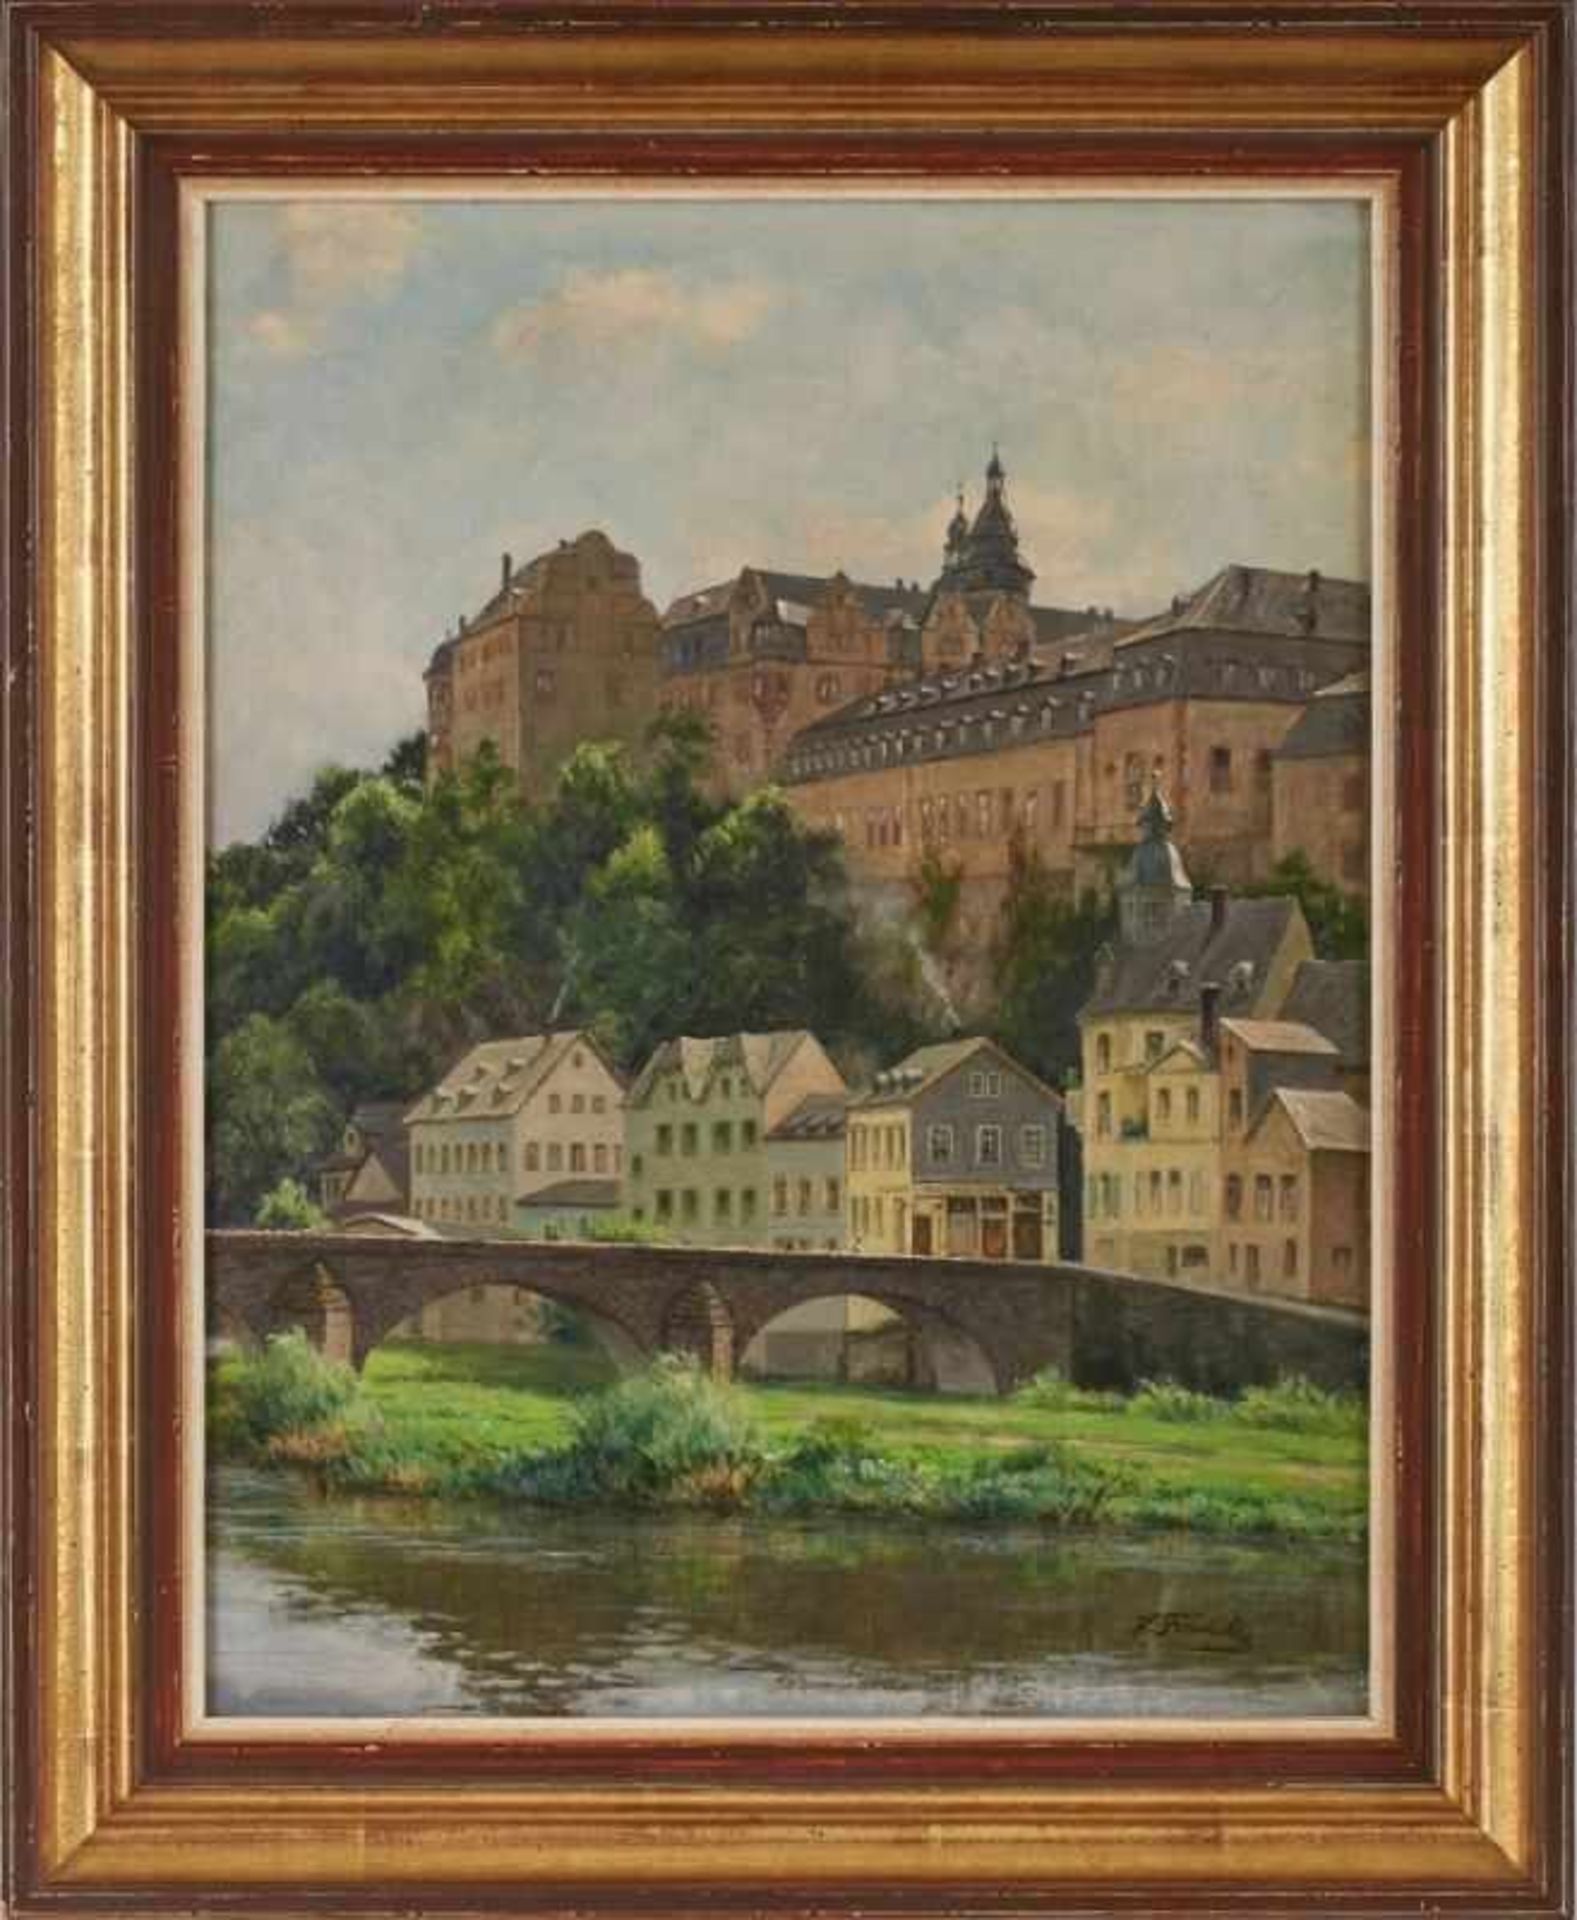 Gemälde Hanny Franke 1890 Koblenz - 1973 Frankfurt "Schloss Weilburg" u. re. sign. H. Franke Öl/ - Image 2 of 3